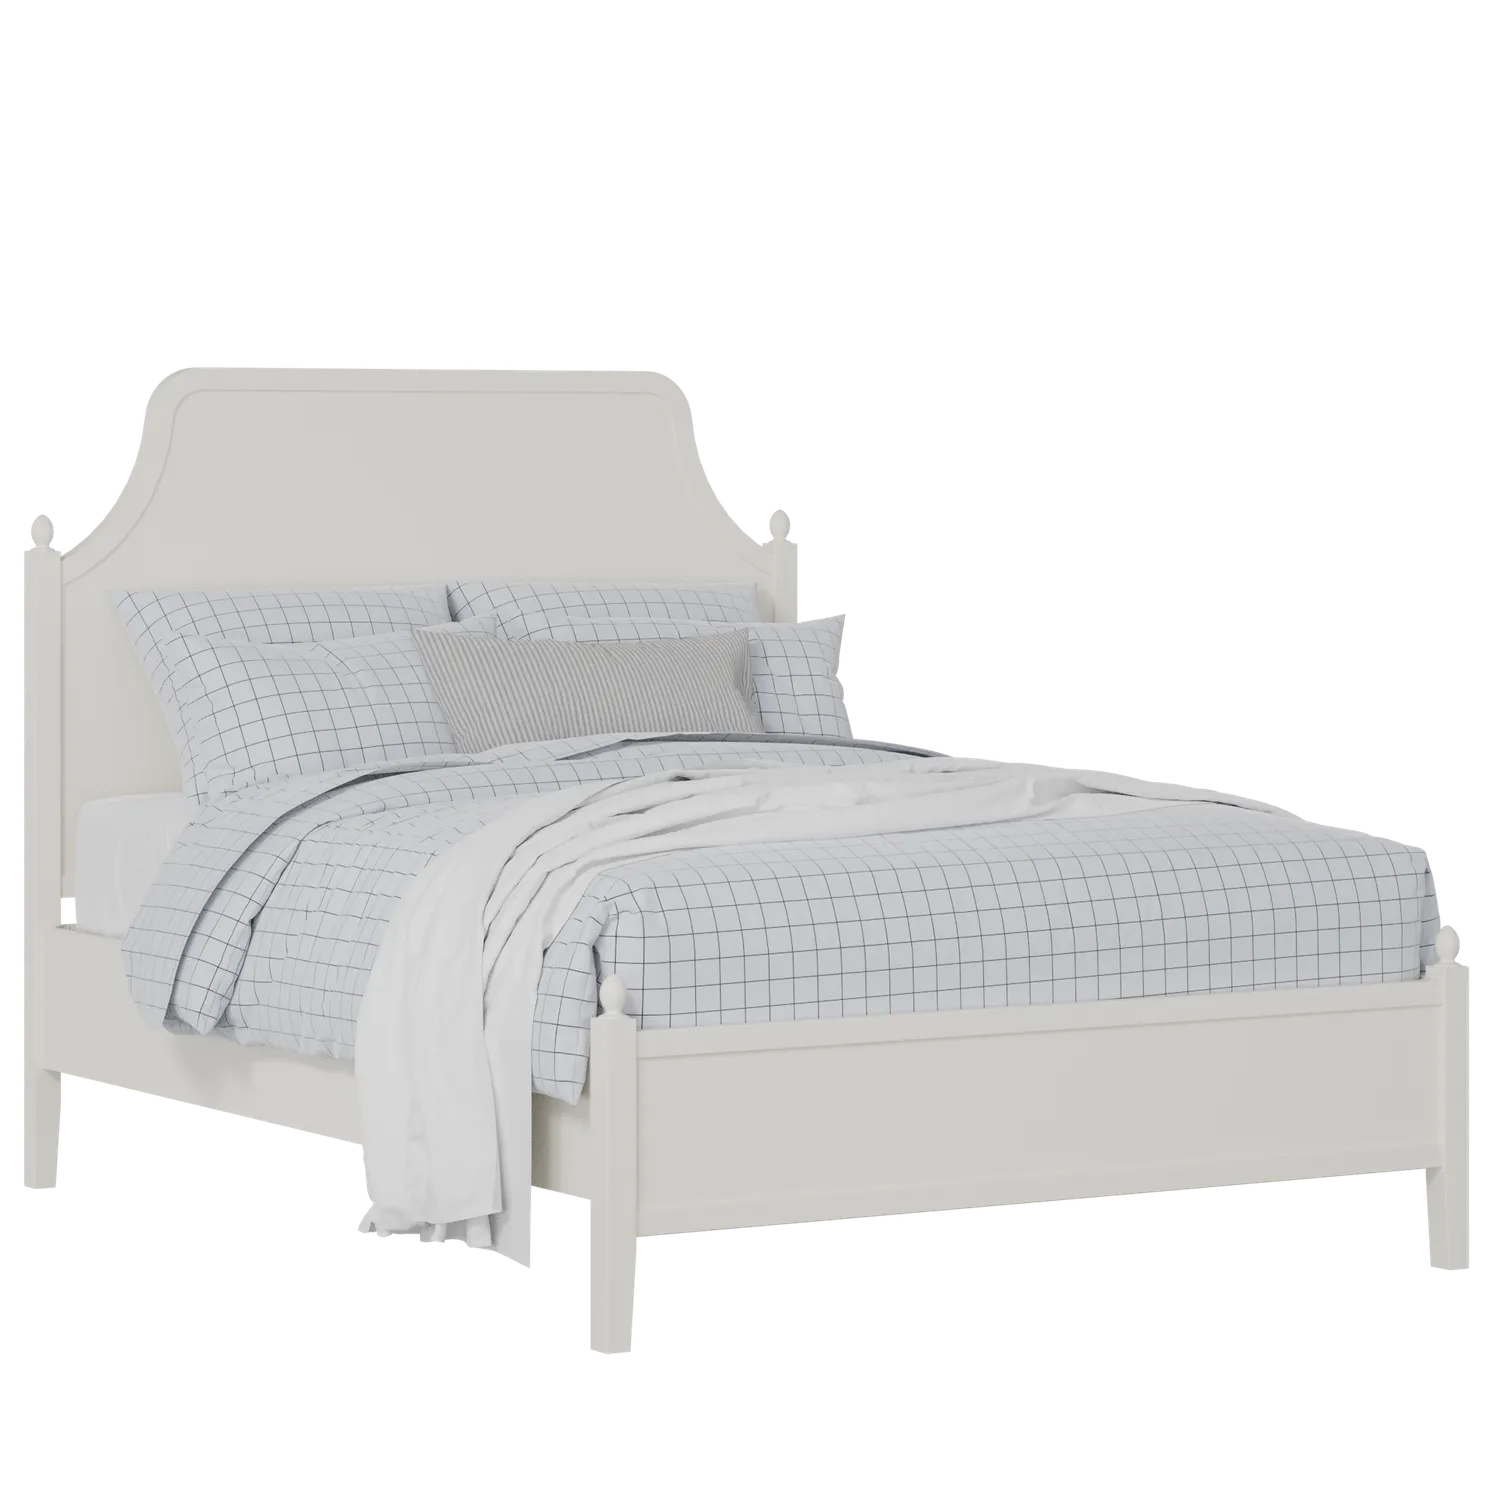 Ruskin Slim houten bed in wit met matras